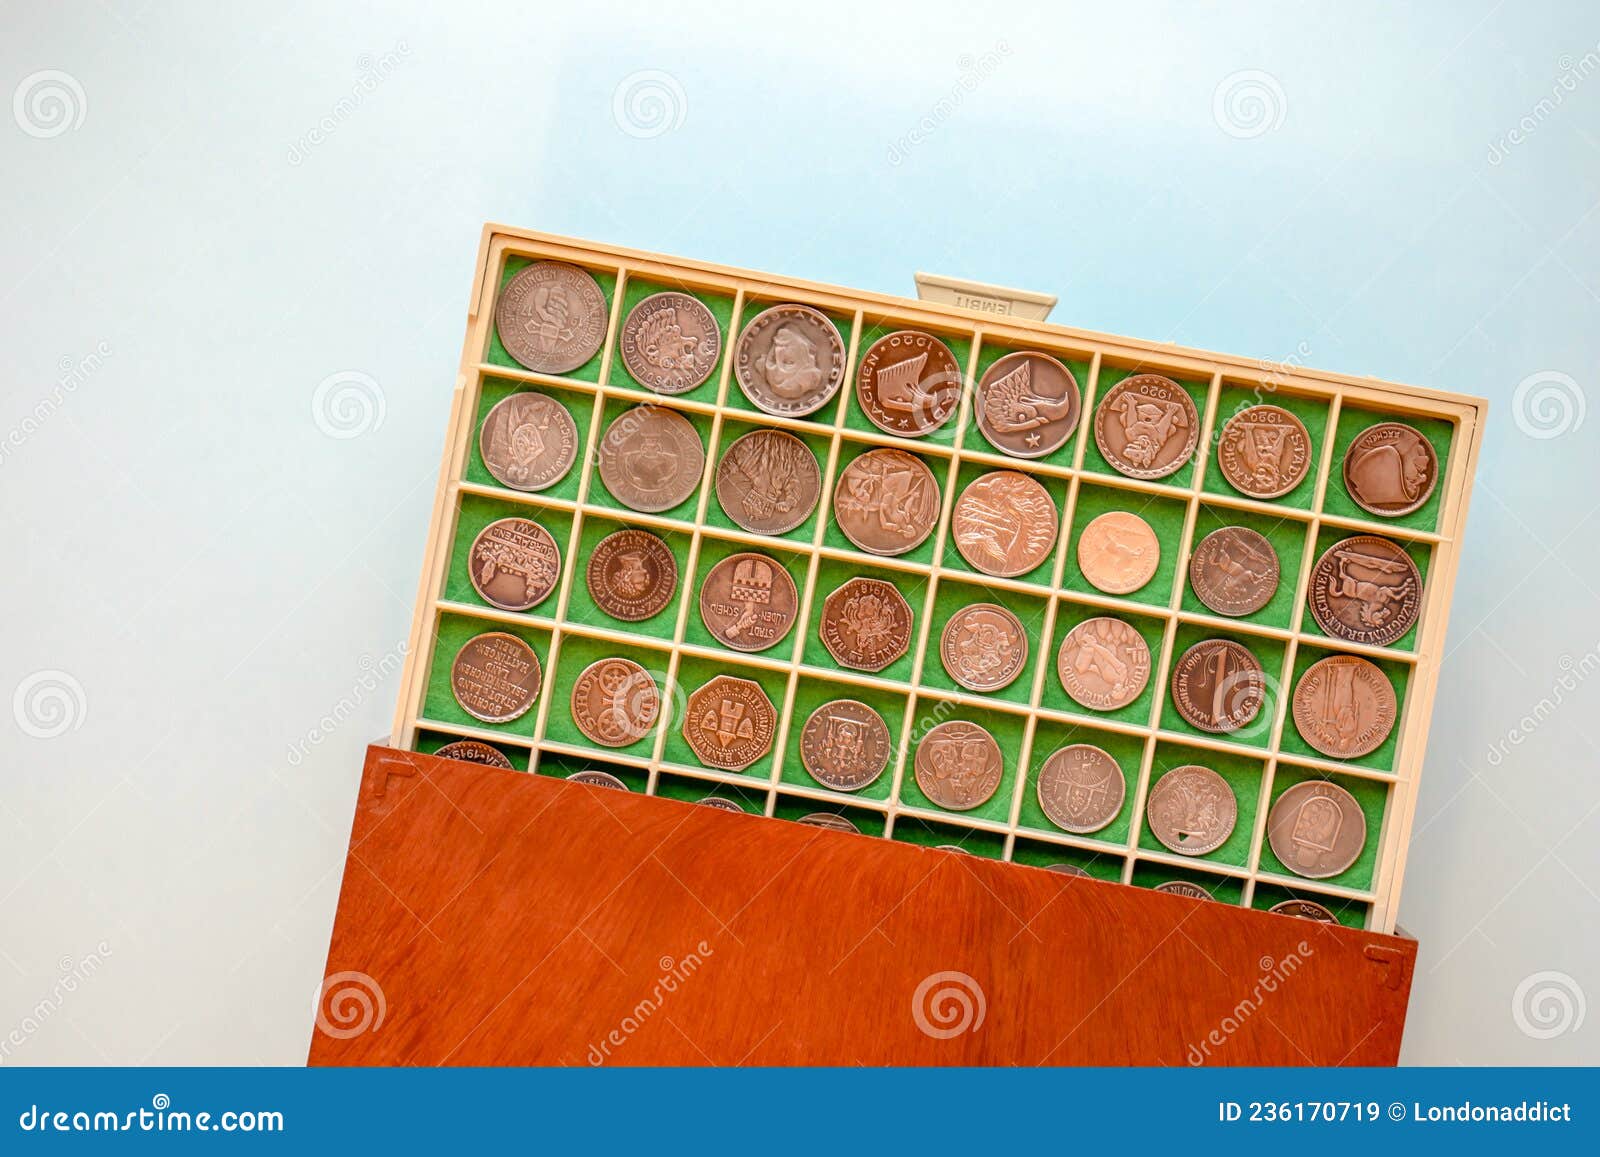 Valise Avec Collection Numismatique De Pièces De Monnaie Antiques